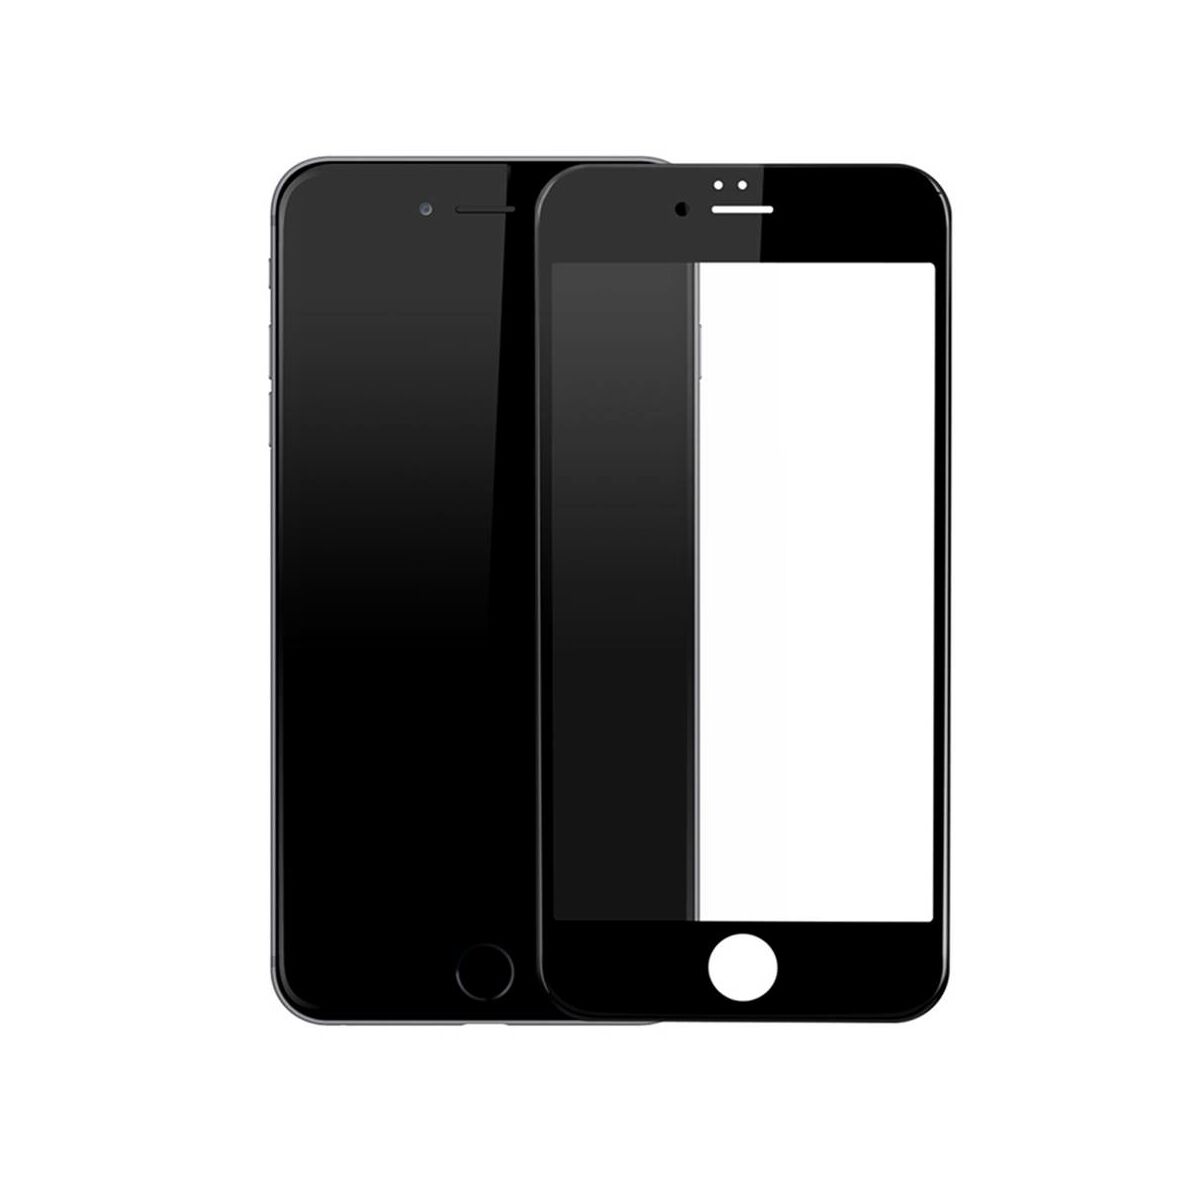 Kép 10/10 - Baseus iPhone 6/6s Plus 0.3 mm, teljes felületre edzett üveg kijelzővédő fólia, fekete (SGAPIPH6SP-B3D01)